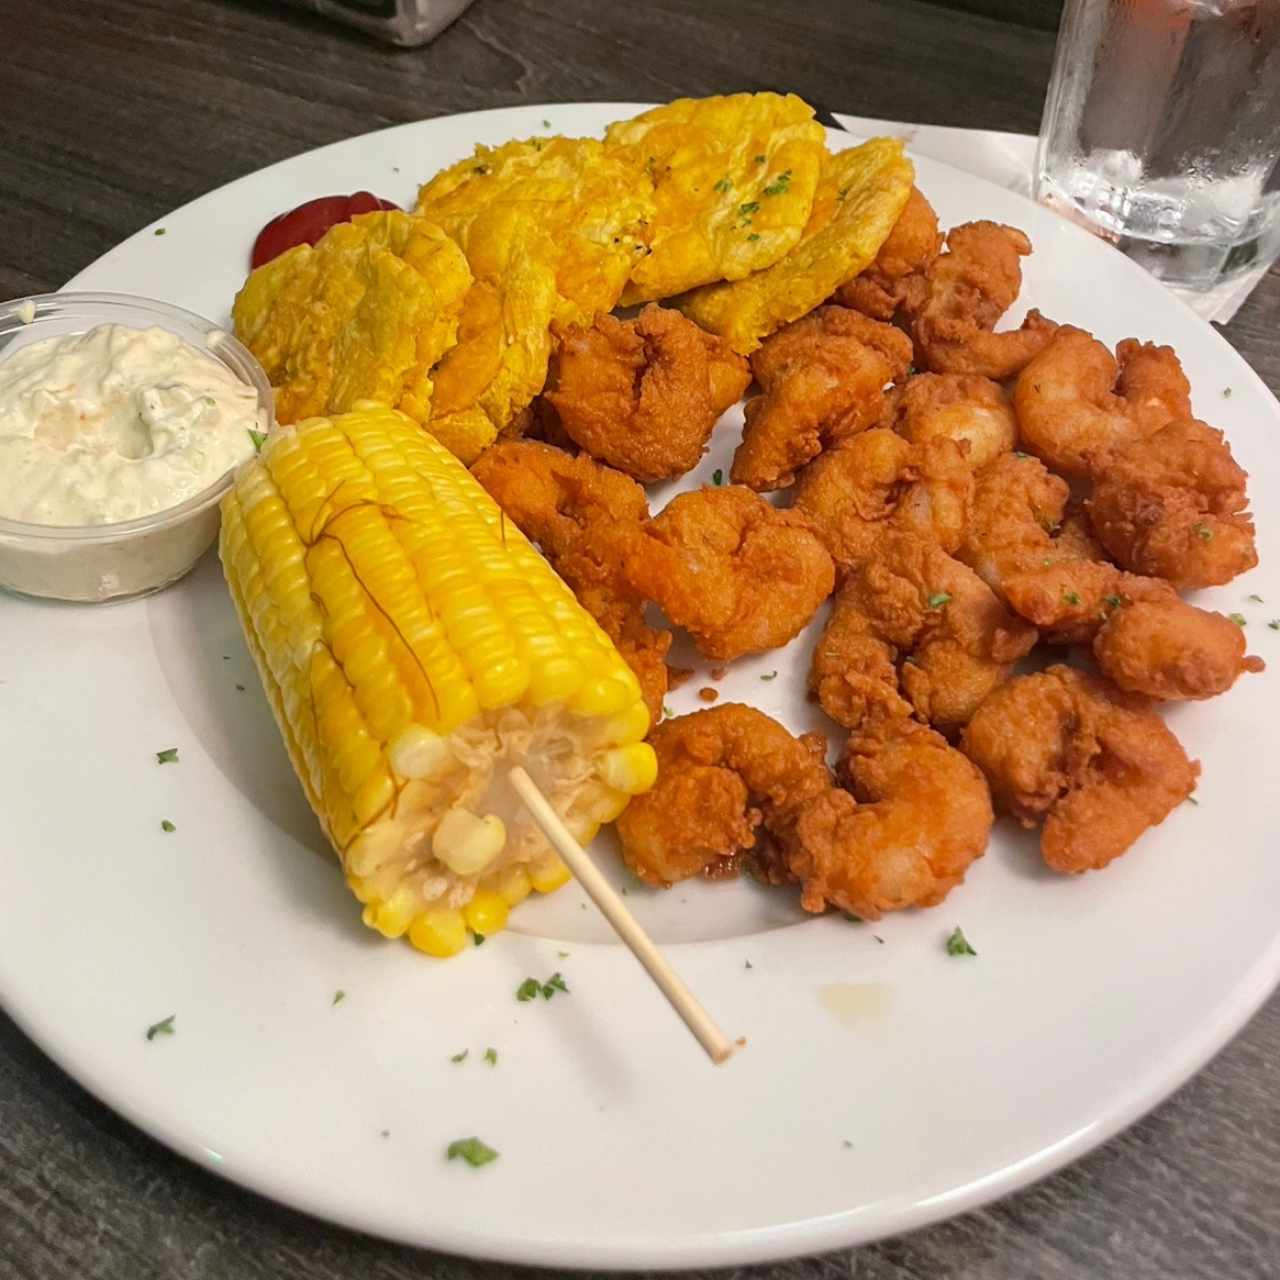 Camarones/Shrimps